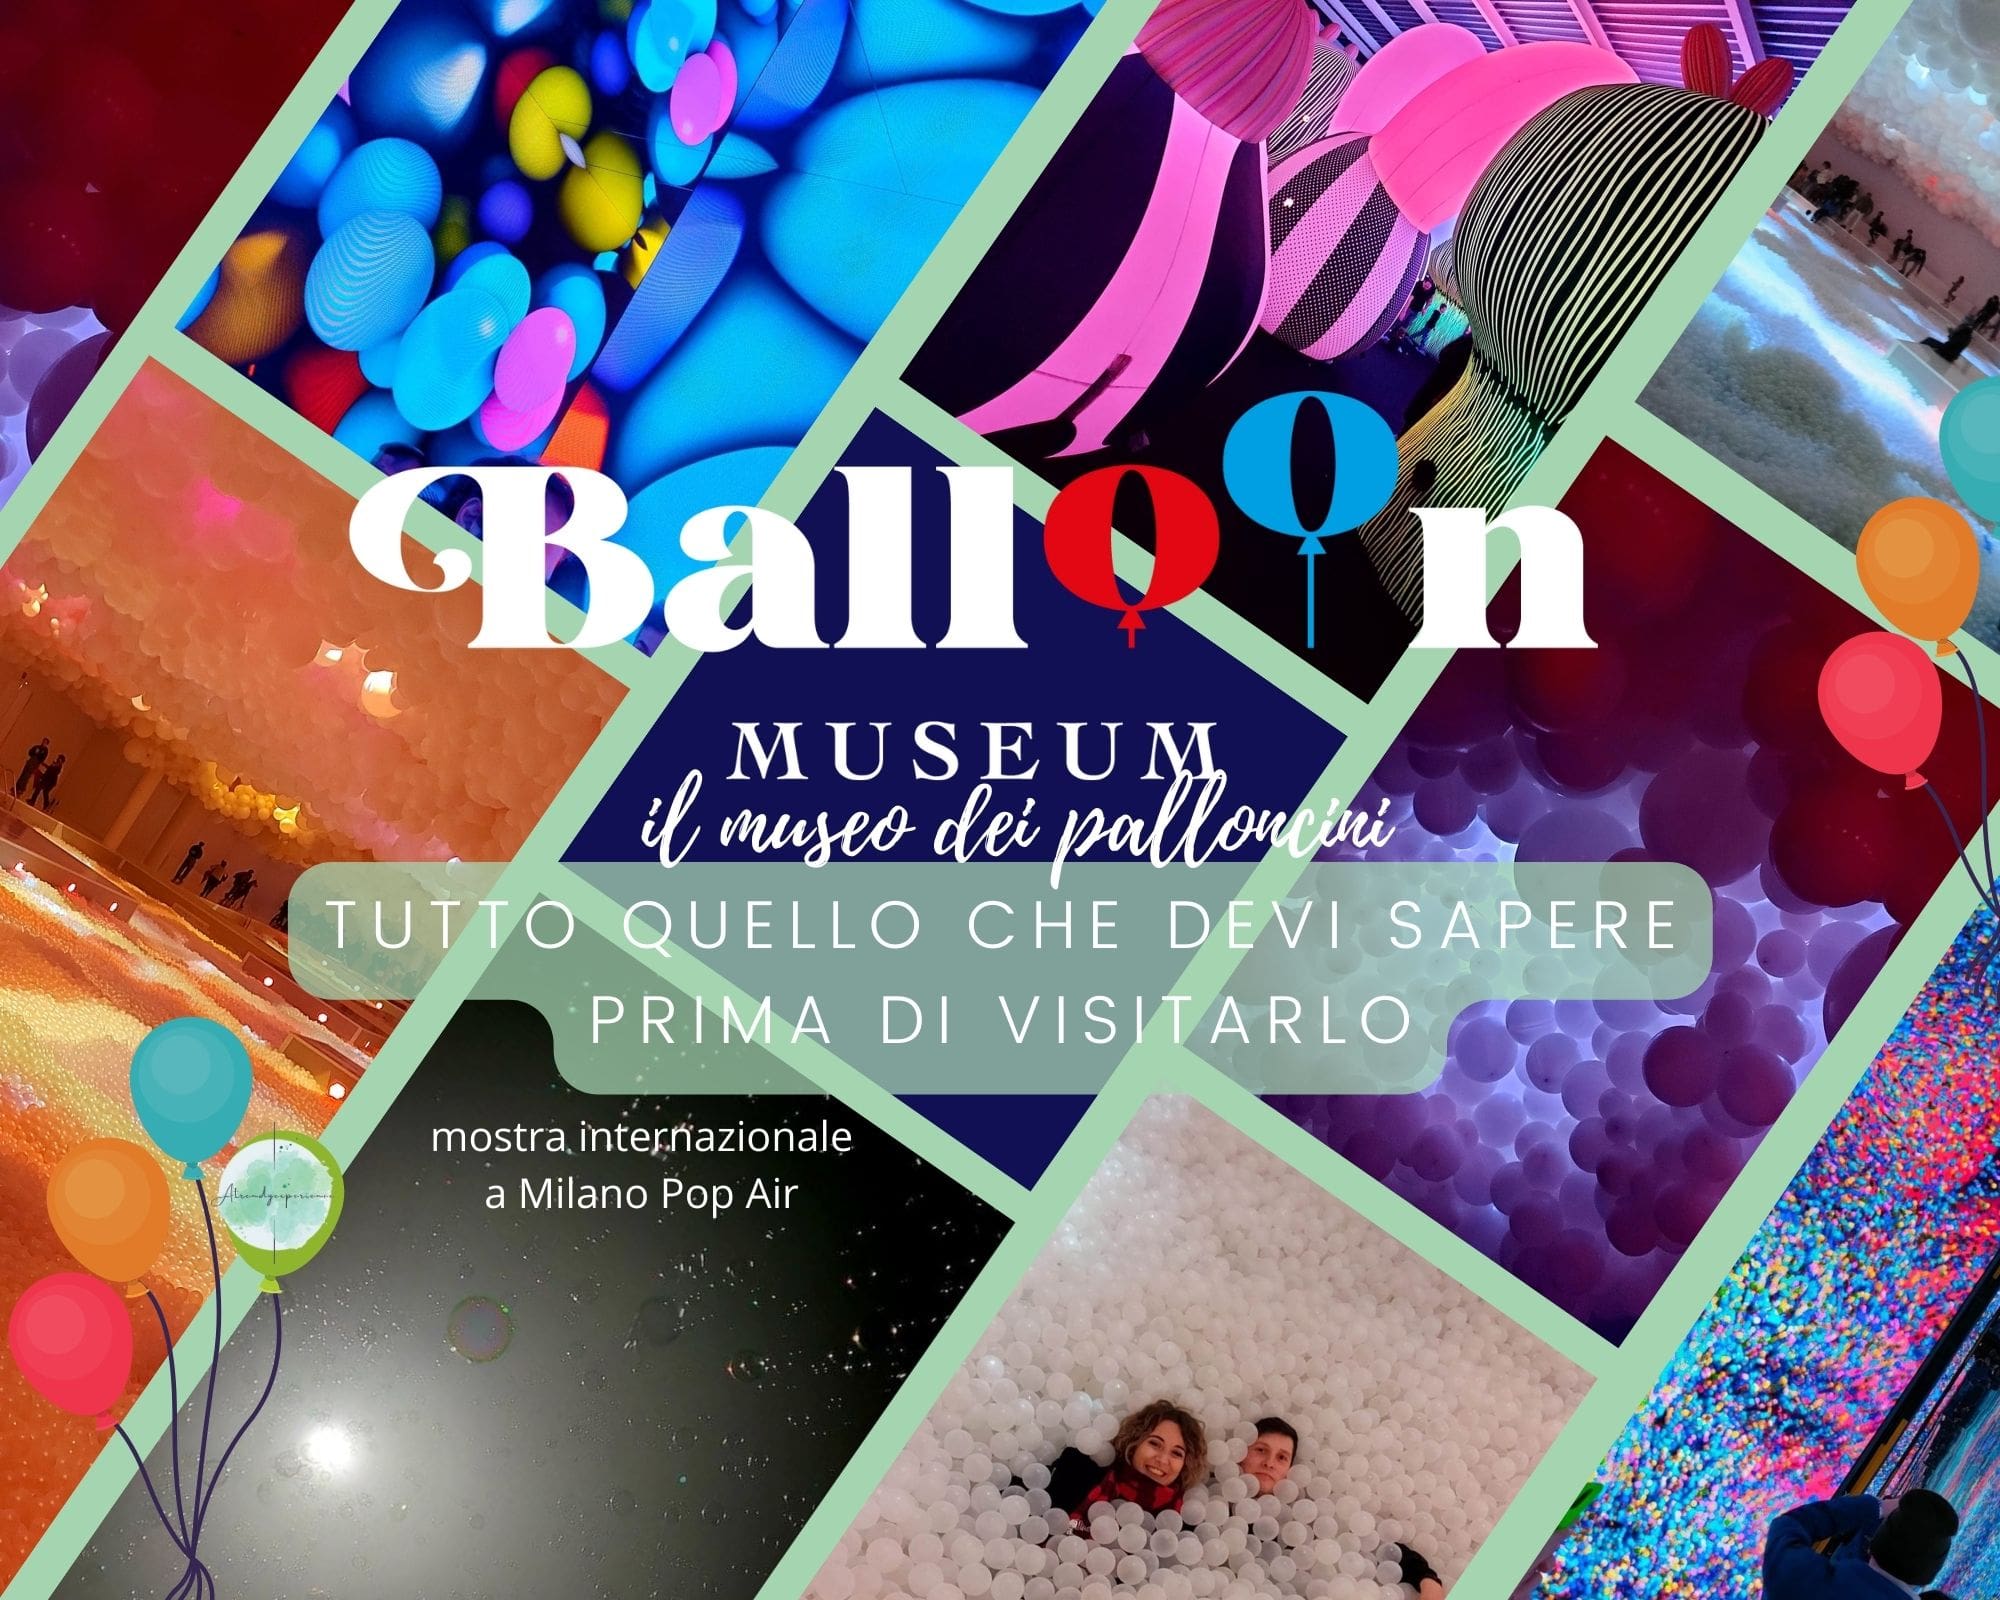 Balloon Museum di Milano, cos'è, dove si trova, quanto dura, come vestirti e consigli pratici